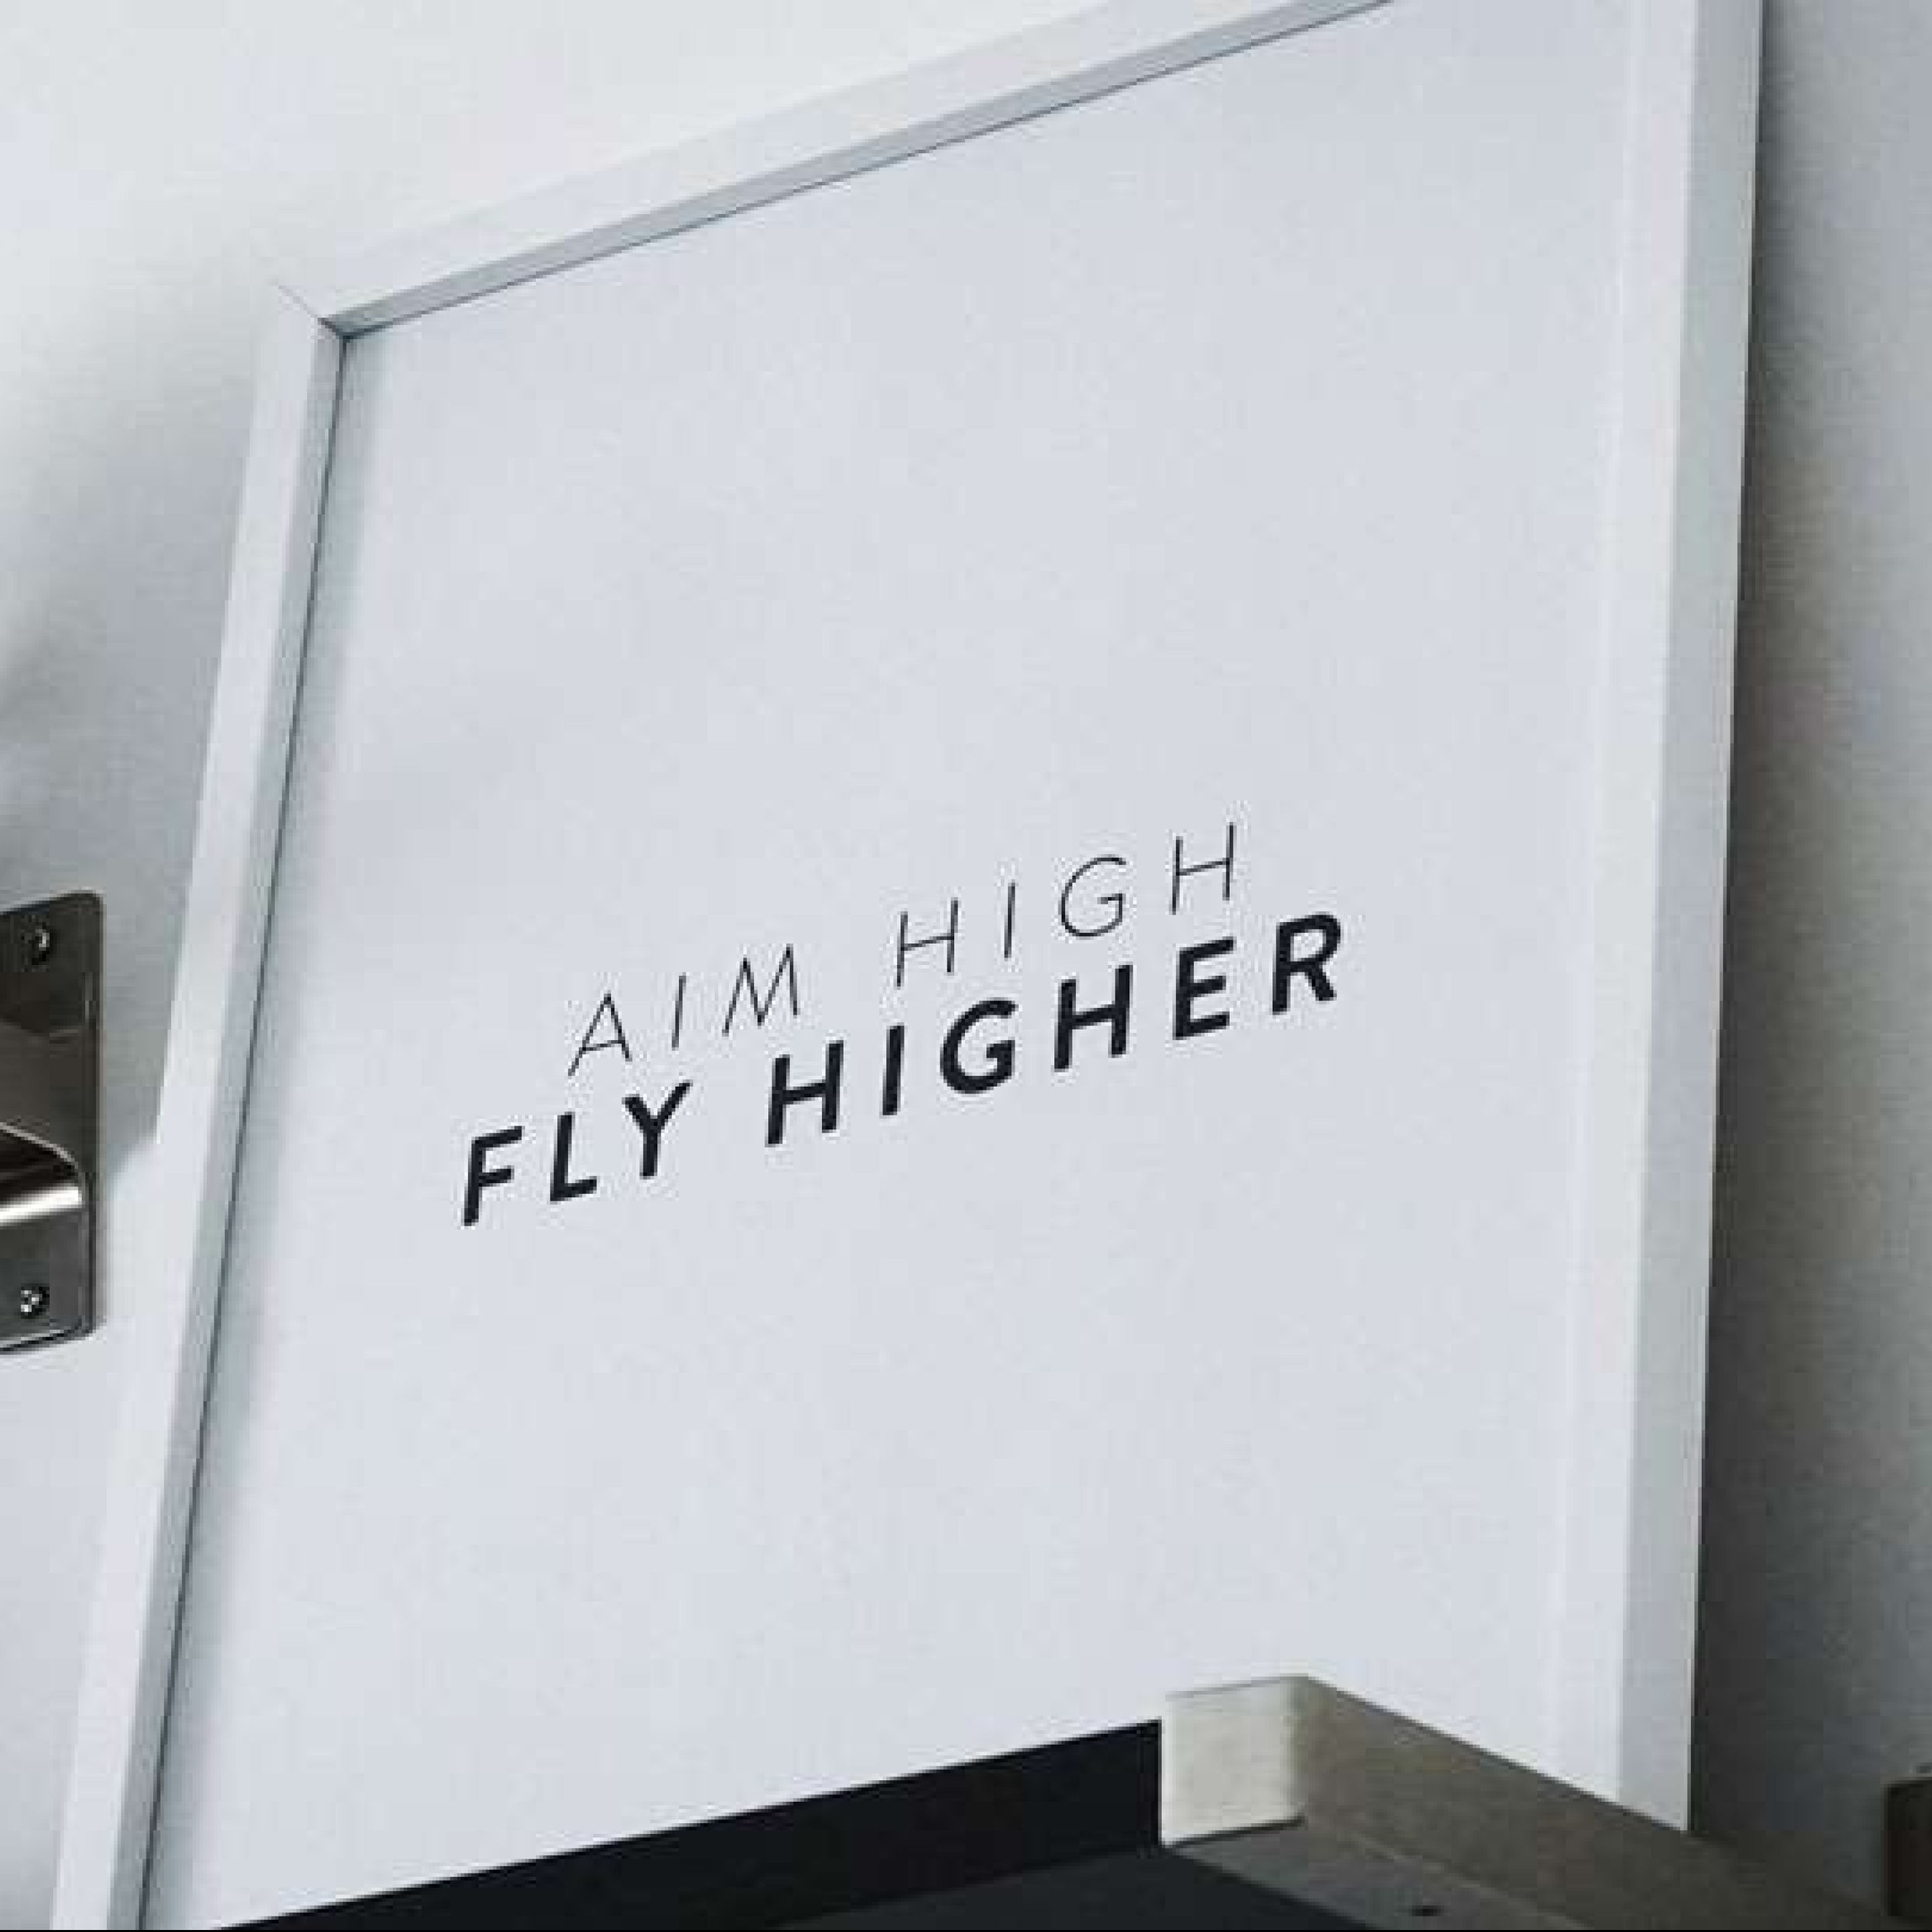 Atteline PR - Hanine Blog Aim High Fly Higher